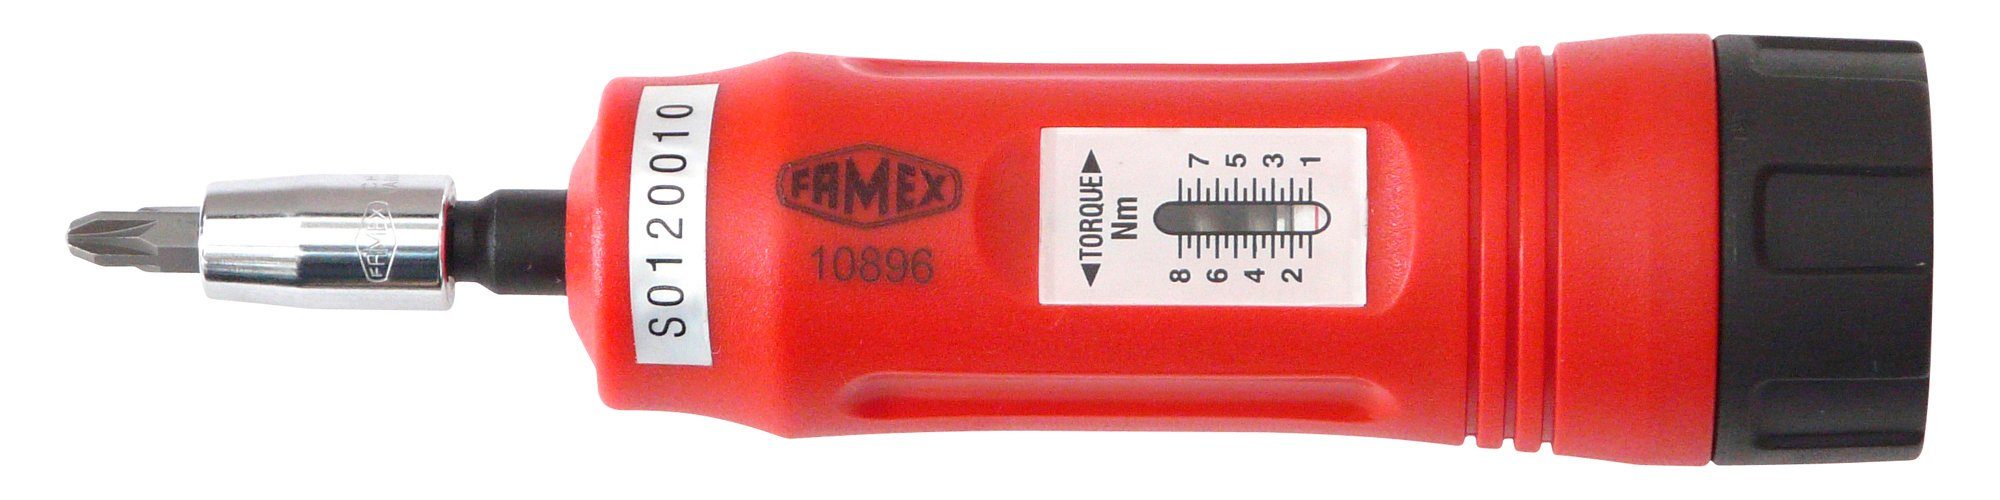 1-8 10896, Nm FAMEX Drehmomentschlüssel